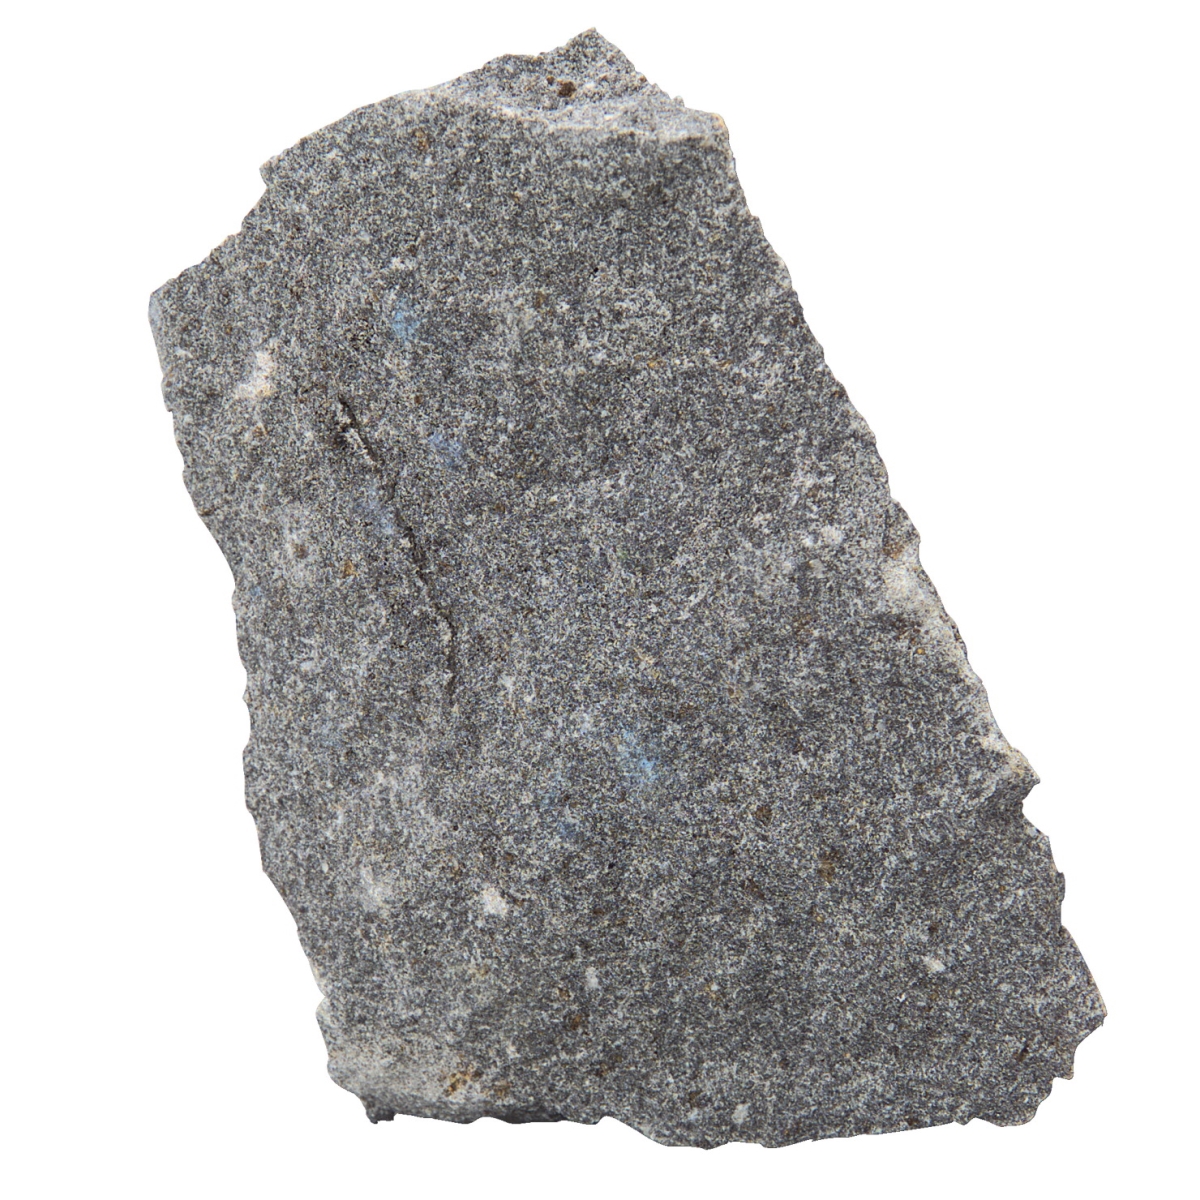 586195 Scott Resources Hand Sample Fine Grained Basalt